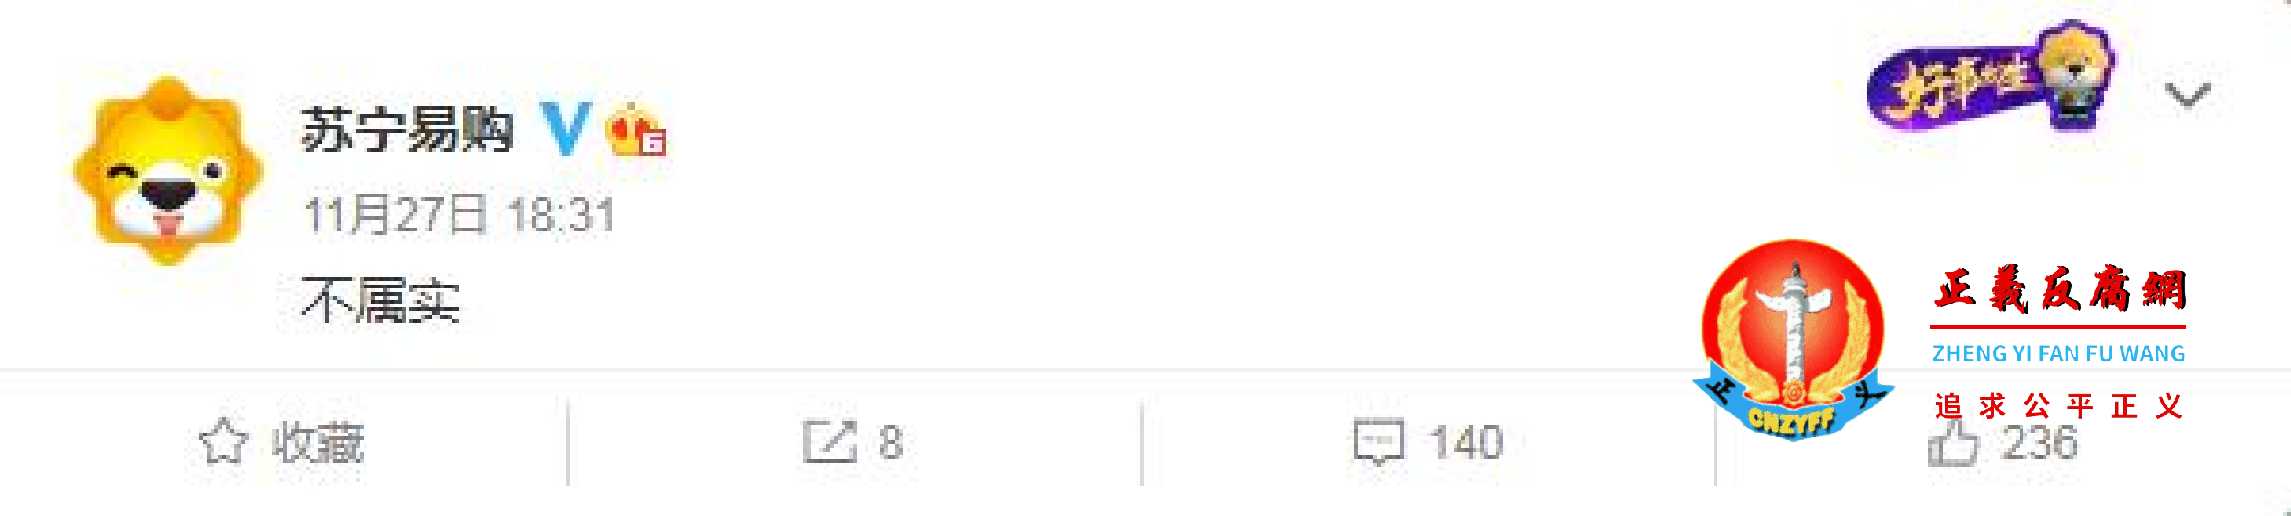 2020年11月27日，苏宁易购官方微博发布只有三个字“不属实”。.jpg